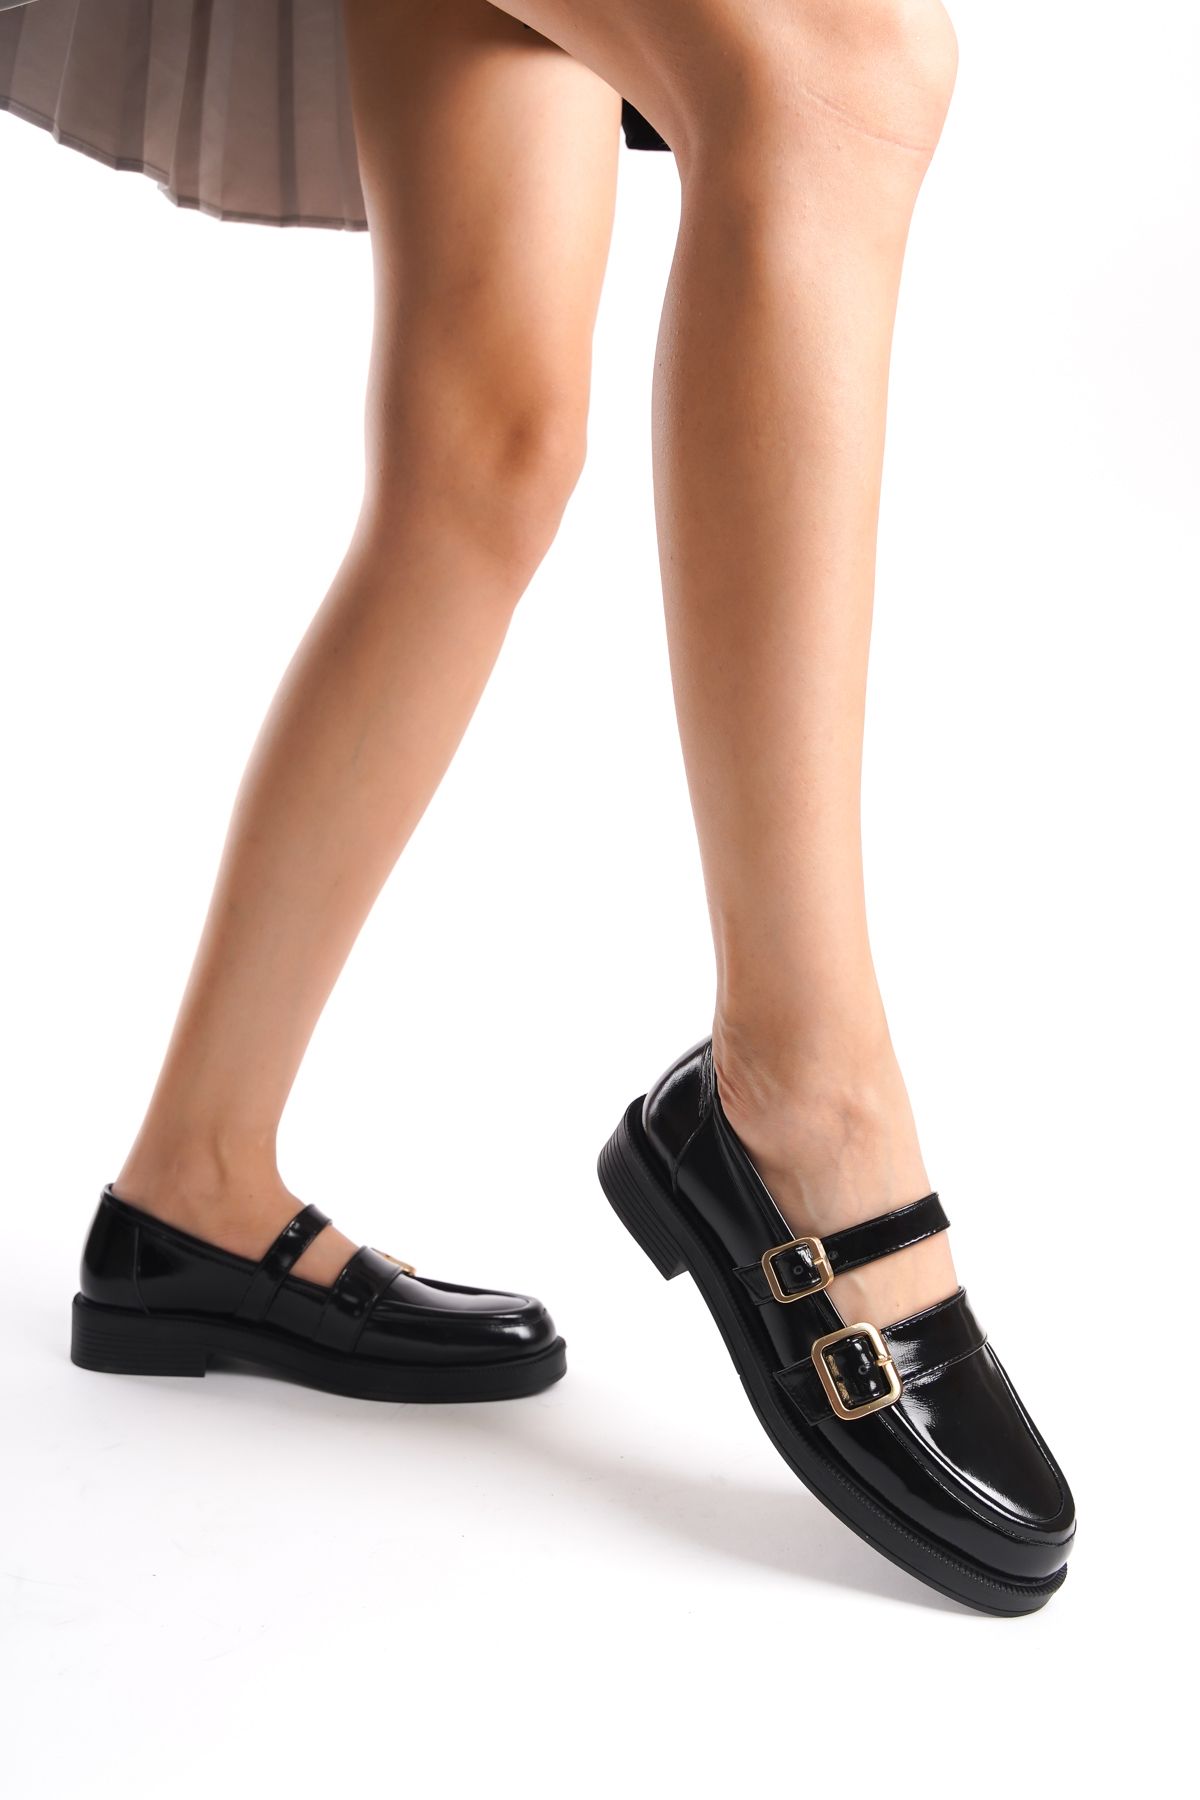 GRADA Kadın Siyah Rugan Gerçek Deri Çift Bantlı Mary Jane Loafer Ayakkabı Hakiki Deri Yumuşak Rugan Tokalı